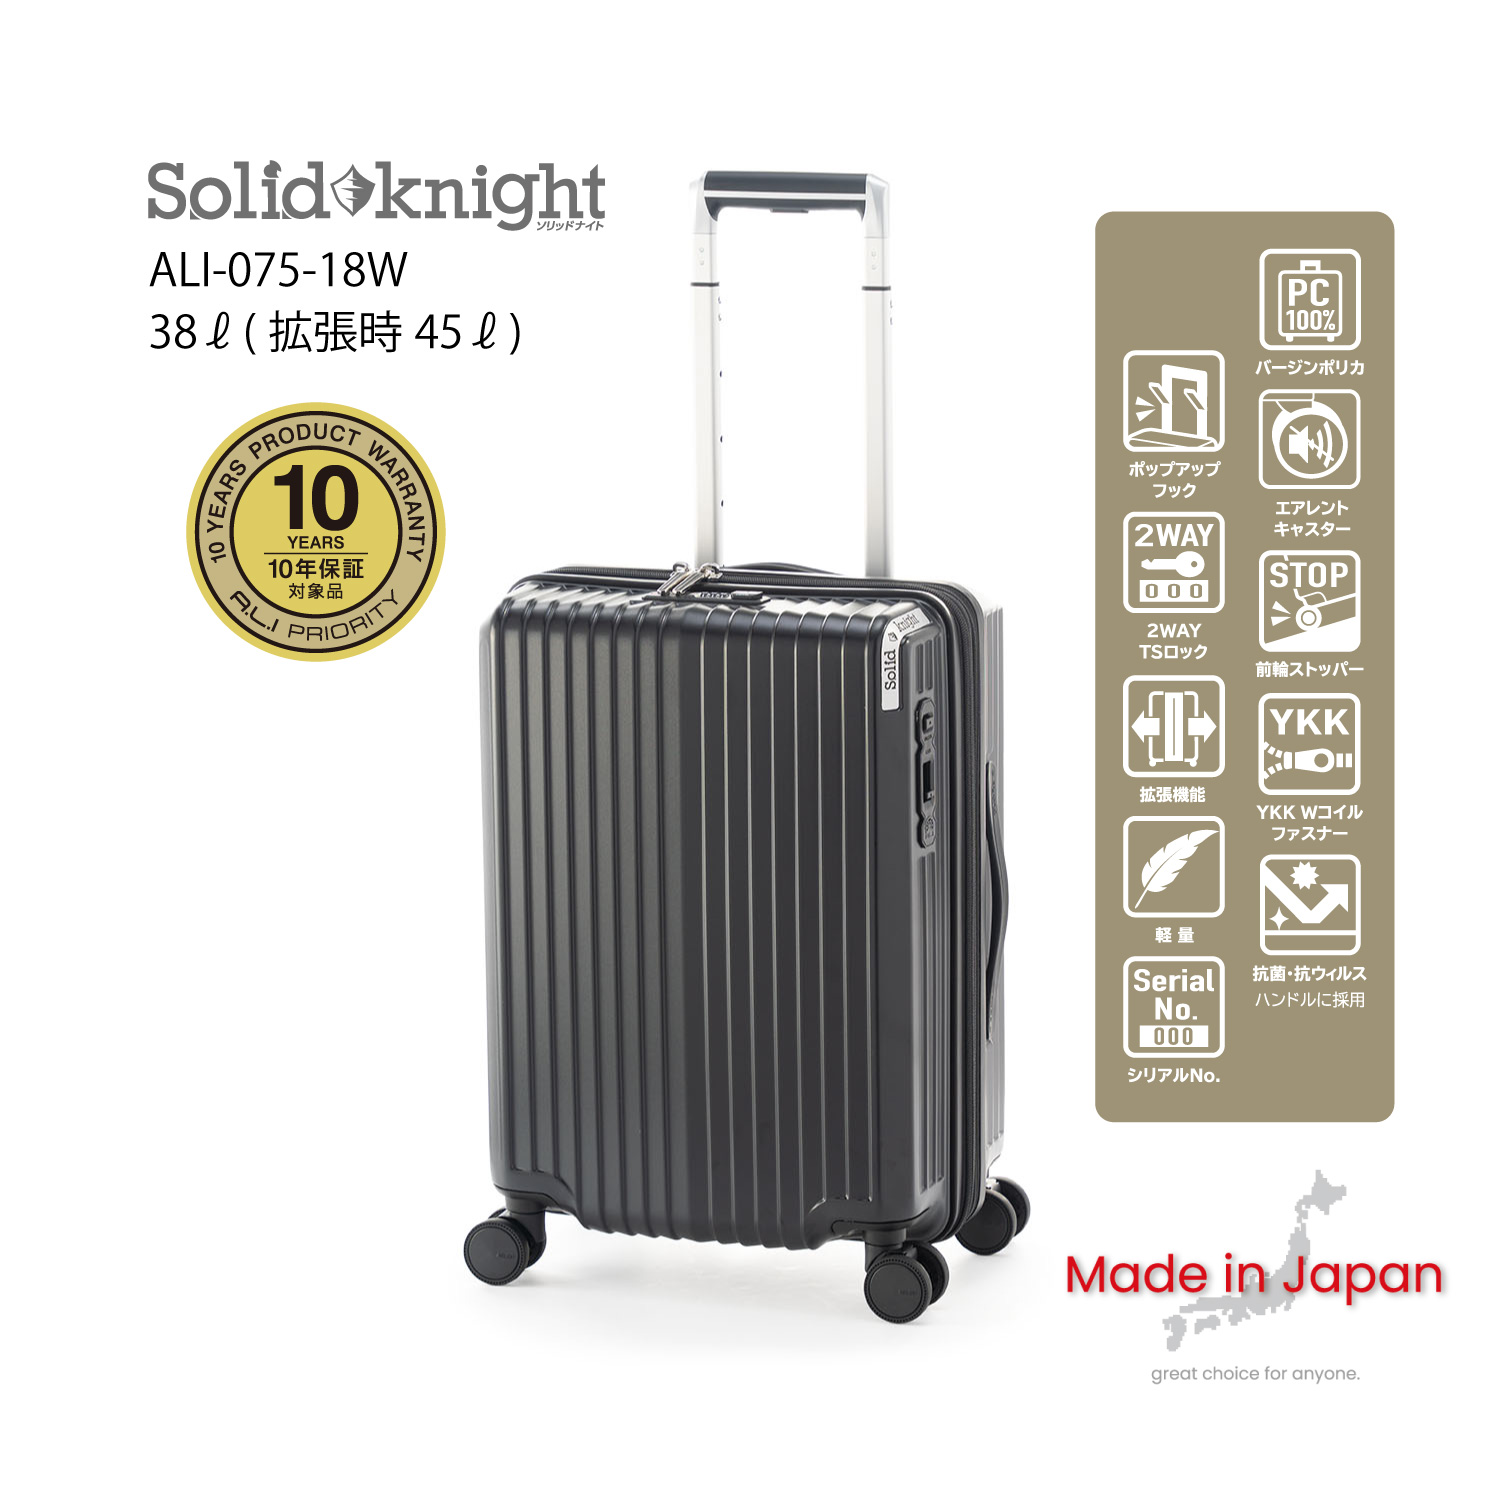 10年保証 | アジア・ラゲージ 公式サイト | Asia Luggage Inc.